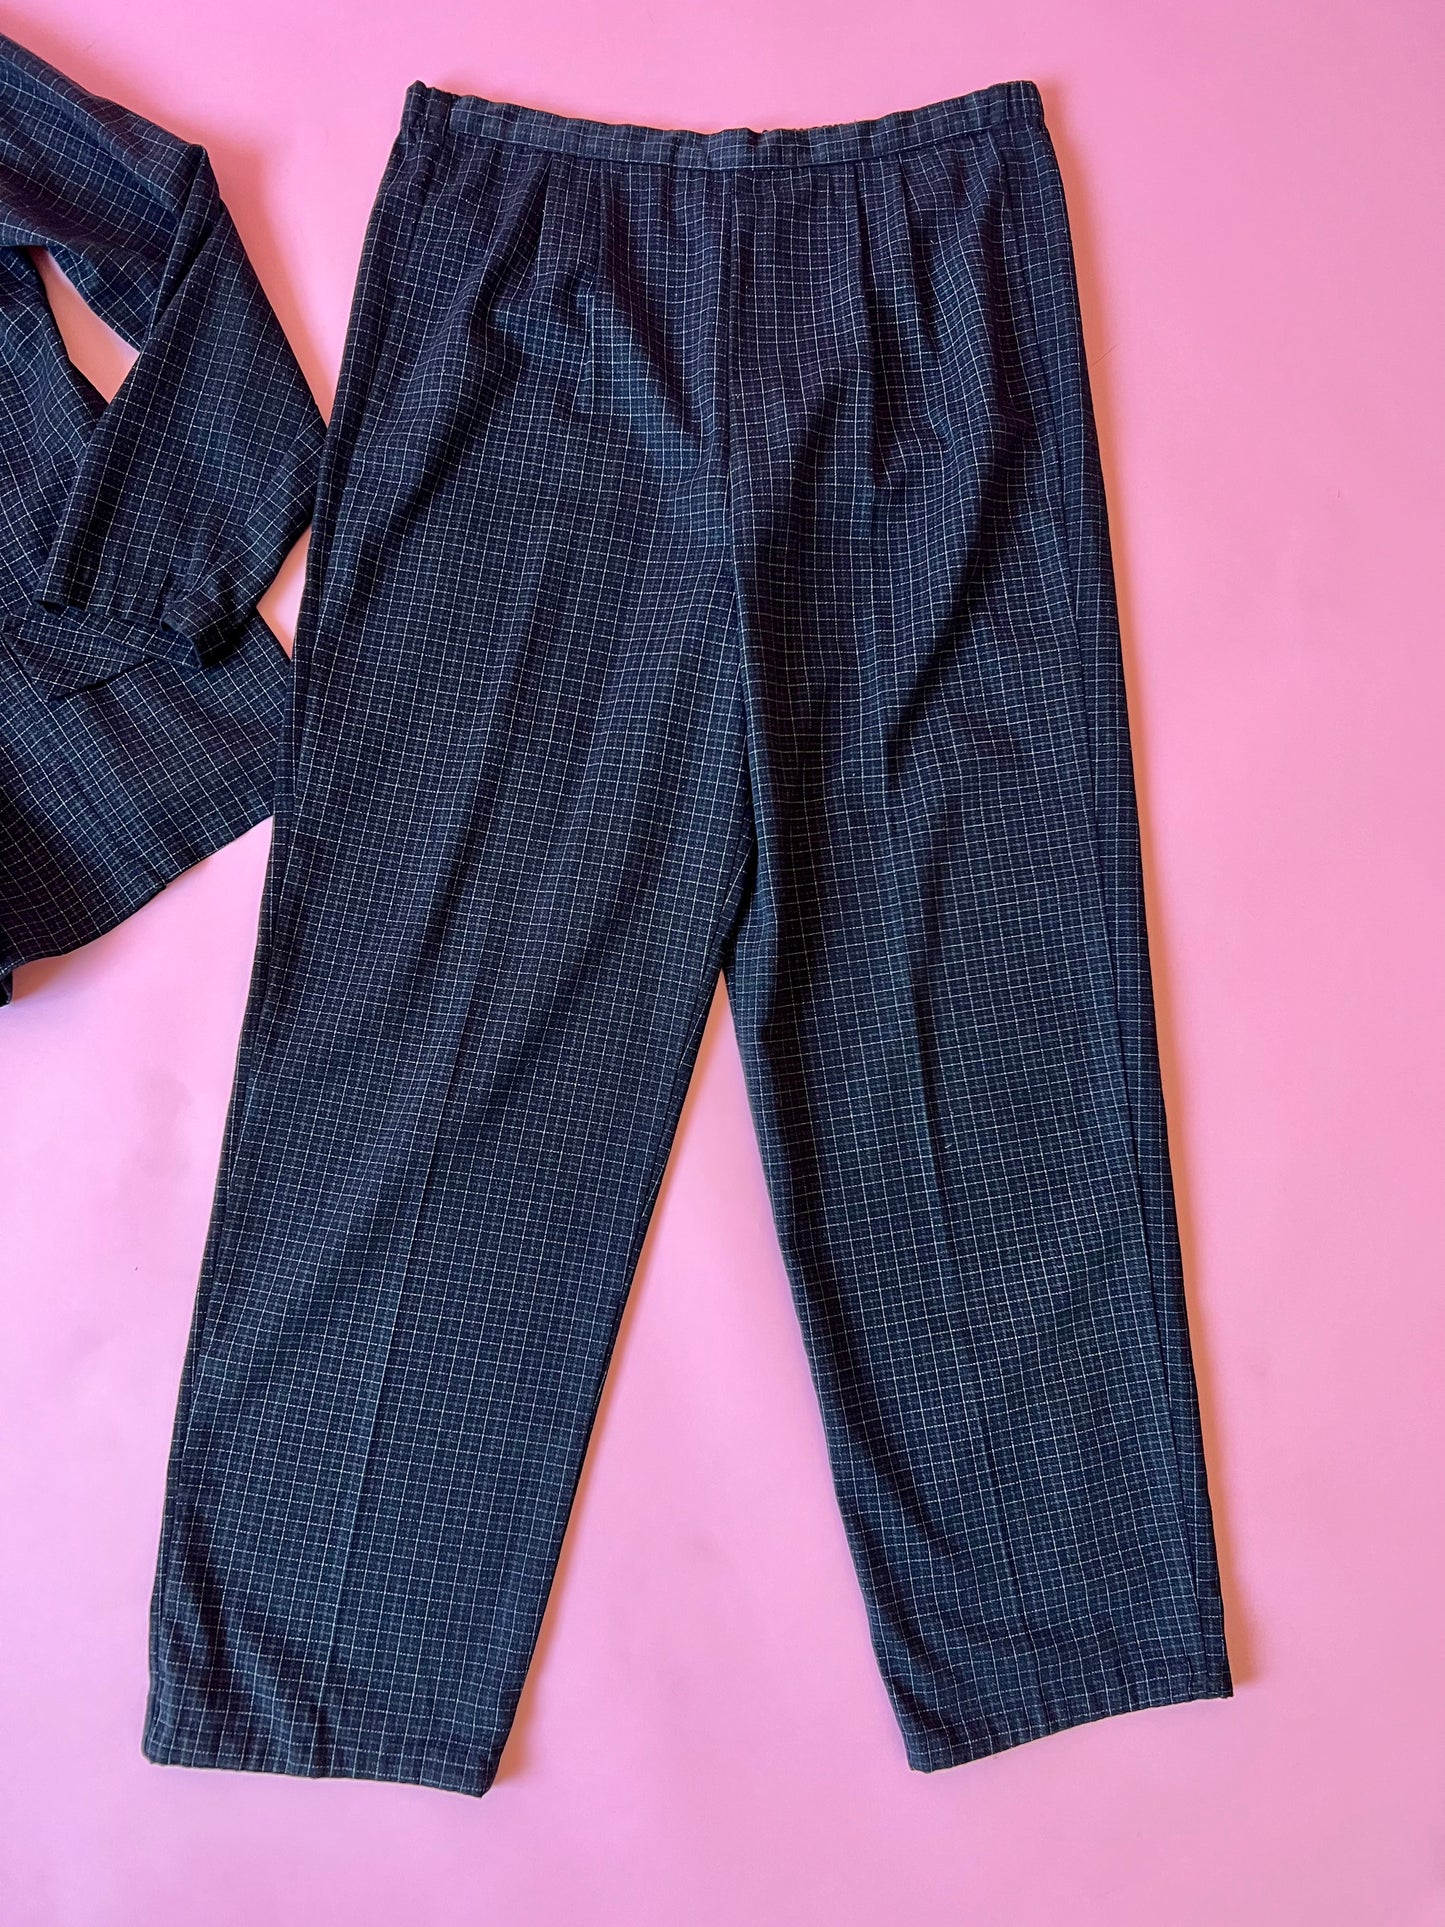 90's Grid Print Comfy Suit Set